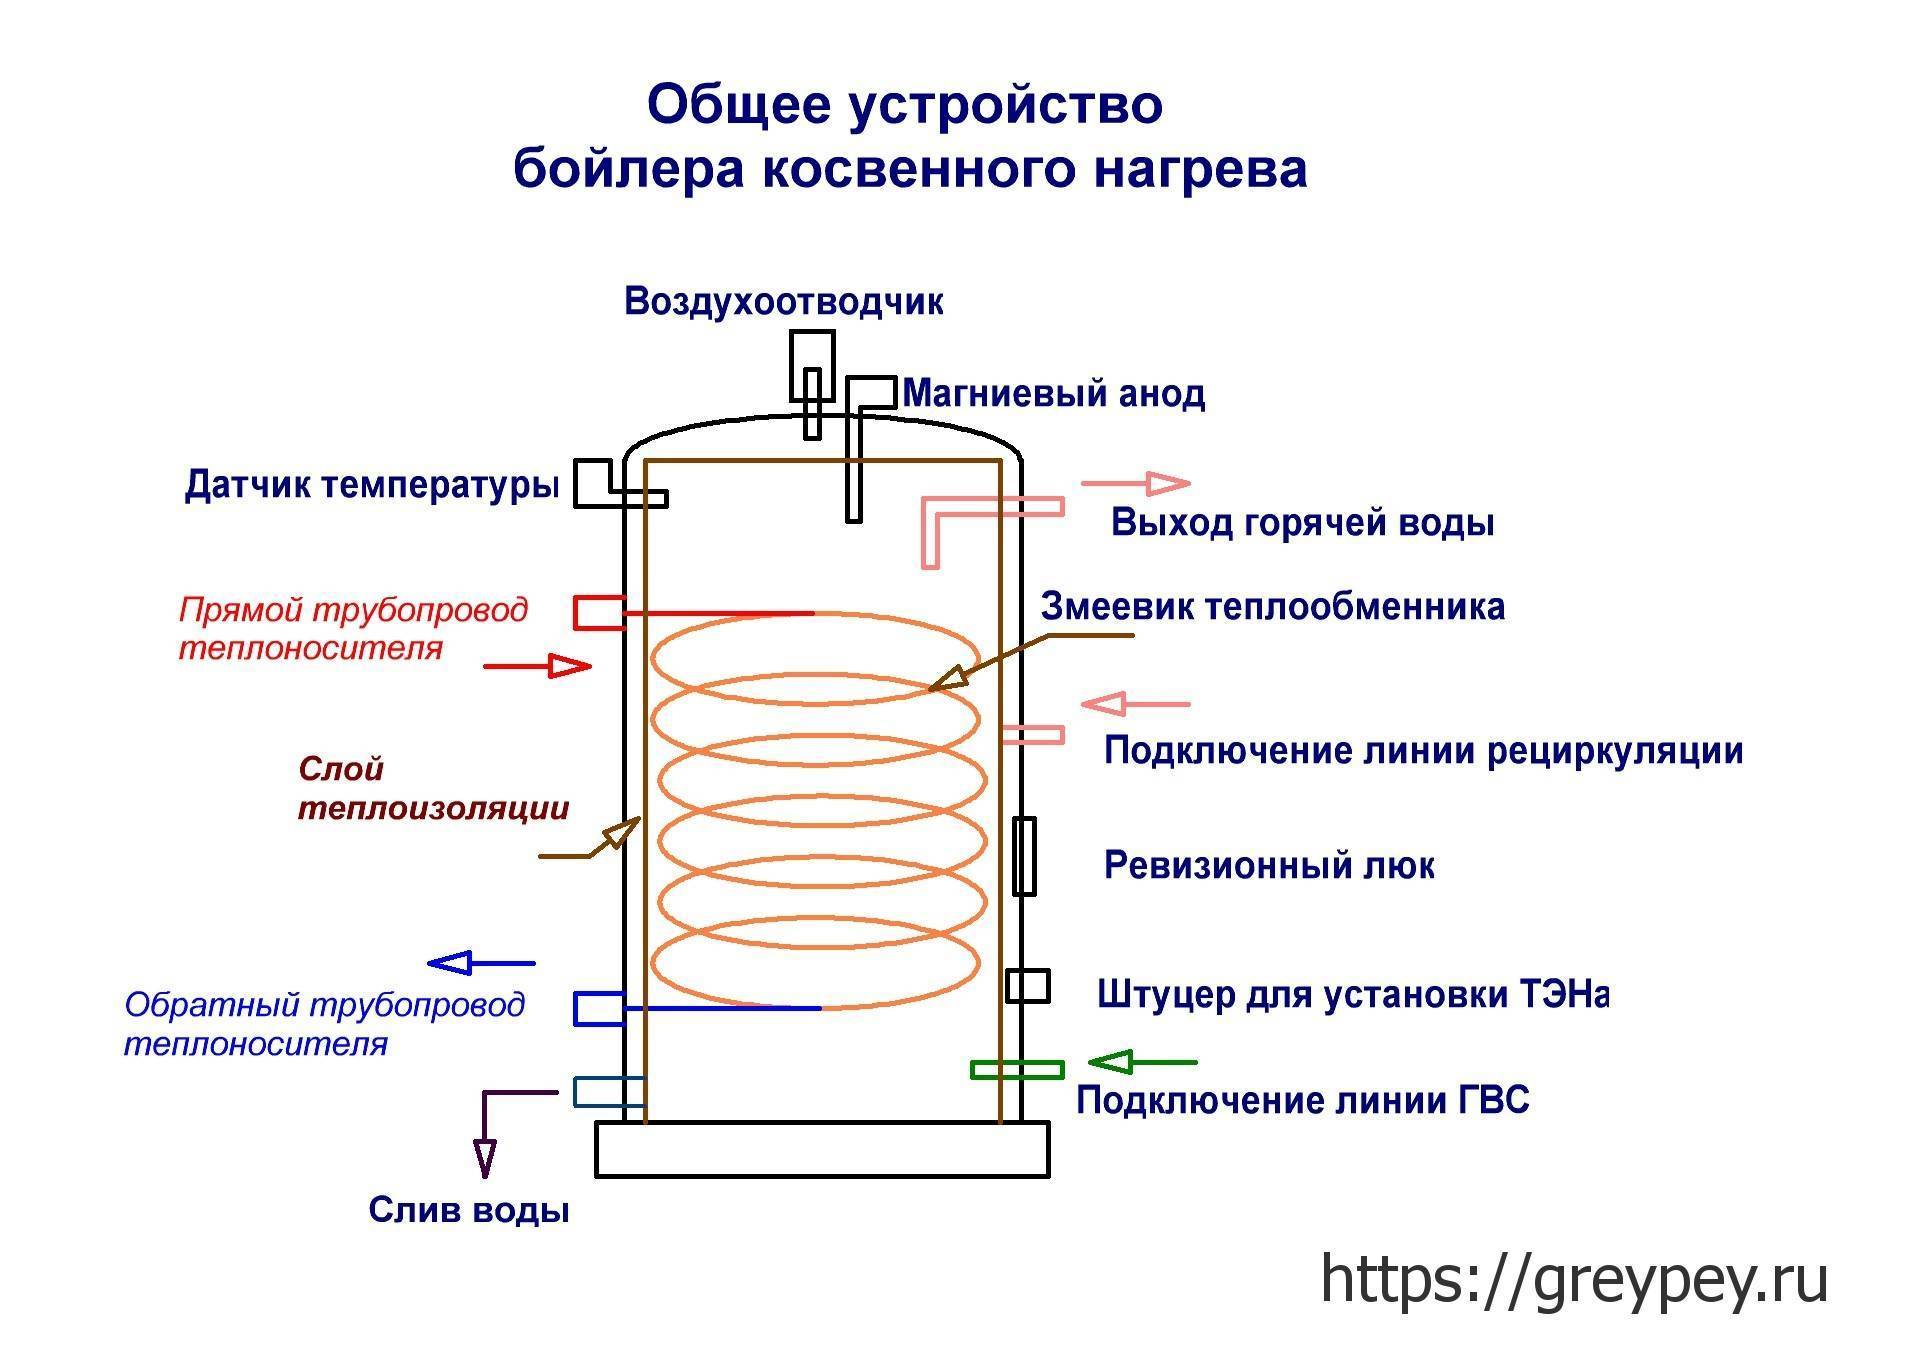 Принцип работы накопительного электрического водонагревателя